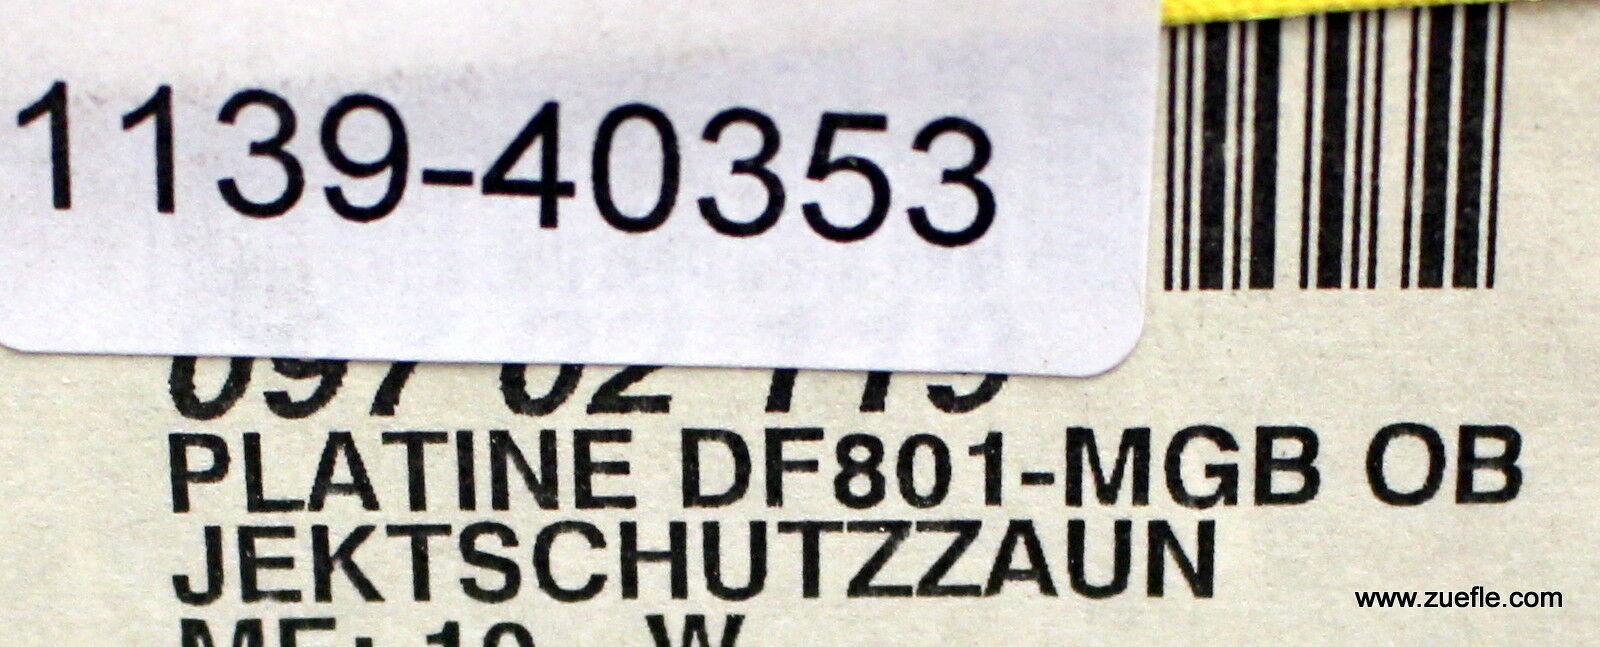 STELLAR Platine ESM-IIB 12562 REV D 2-Zonen-Einzelplatine Type DF801-MGB